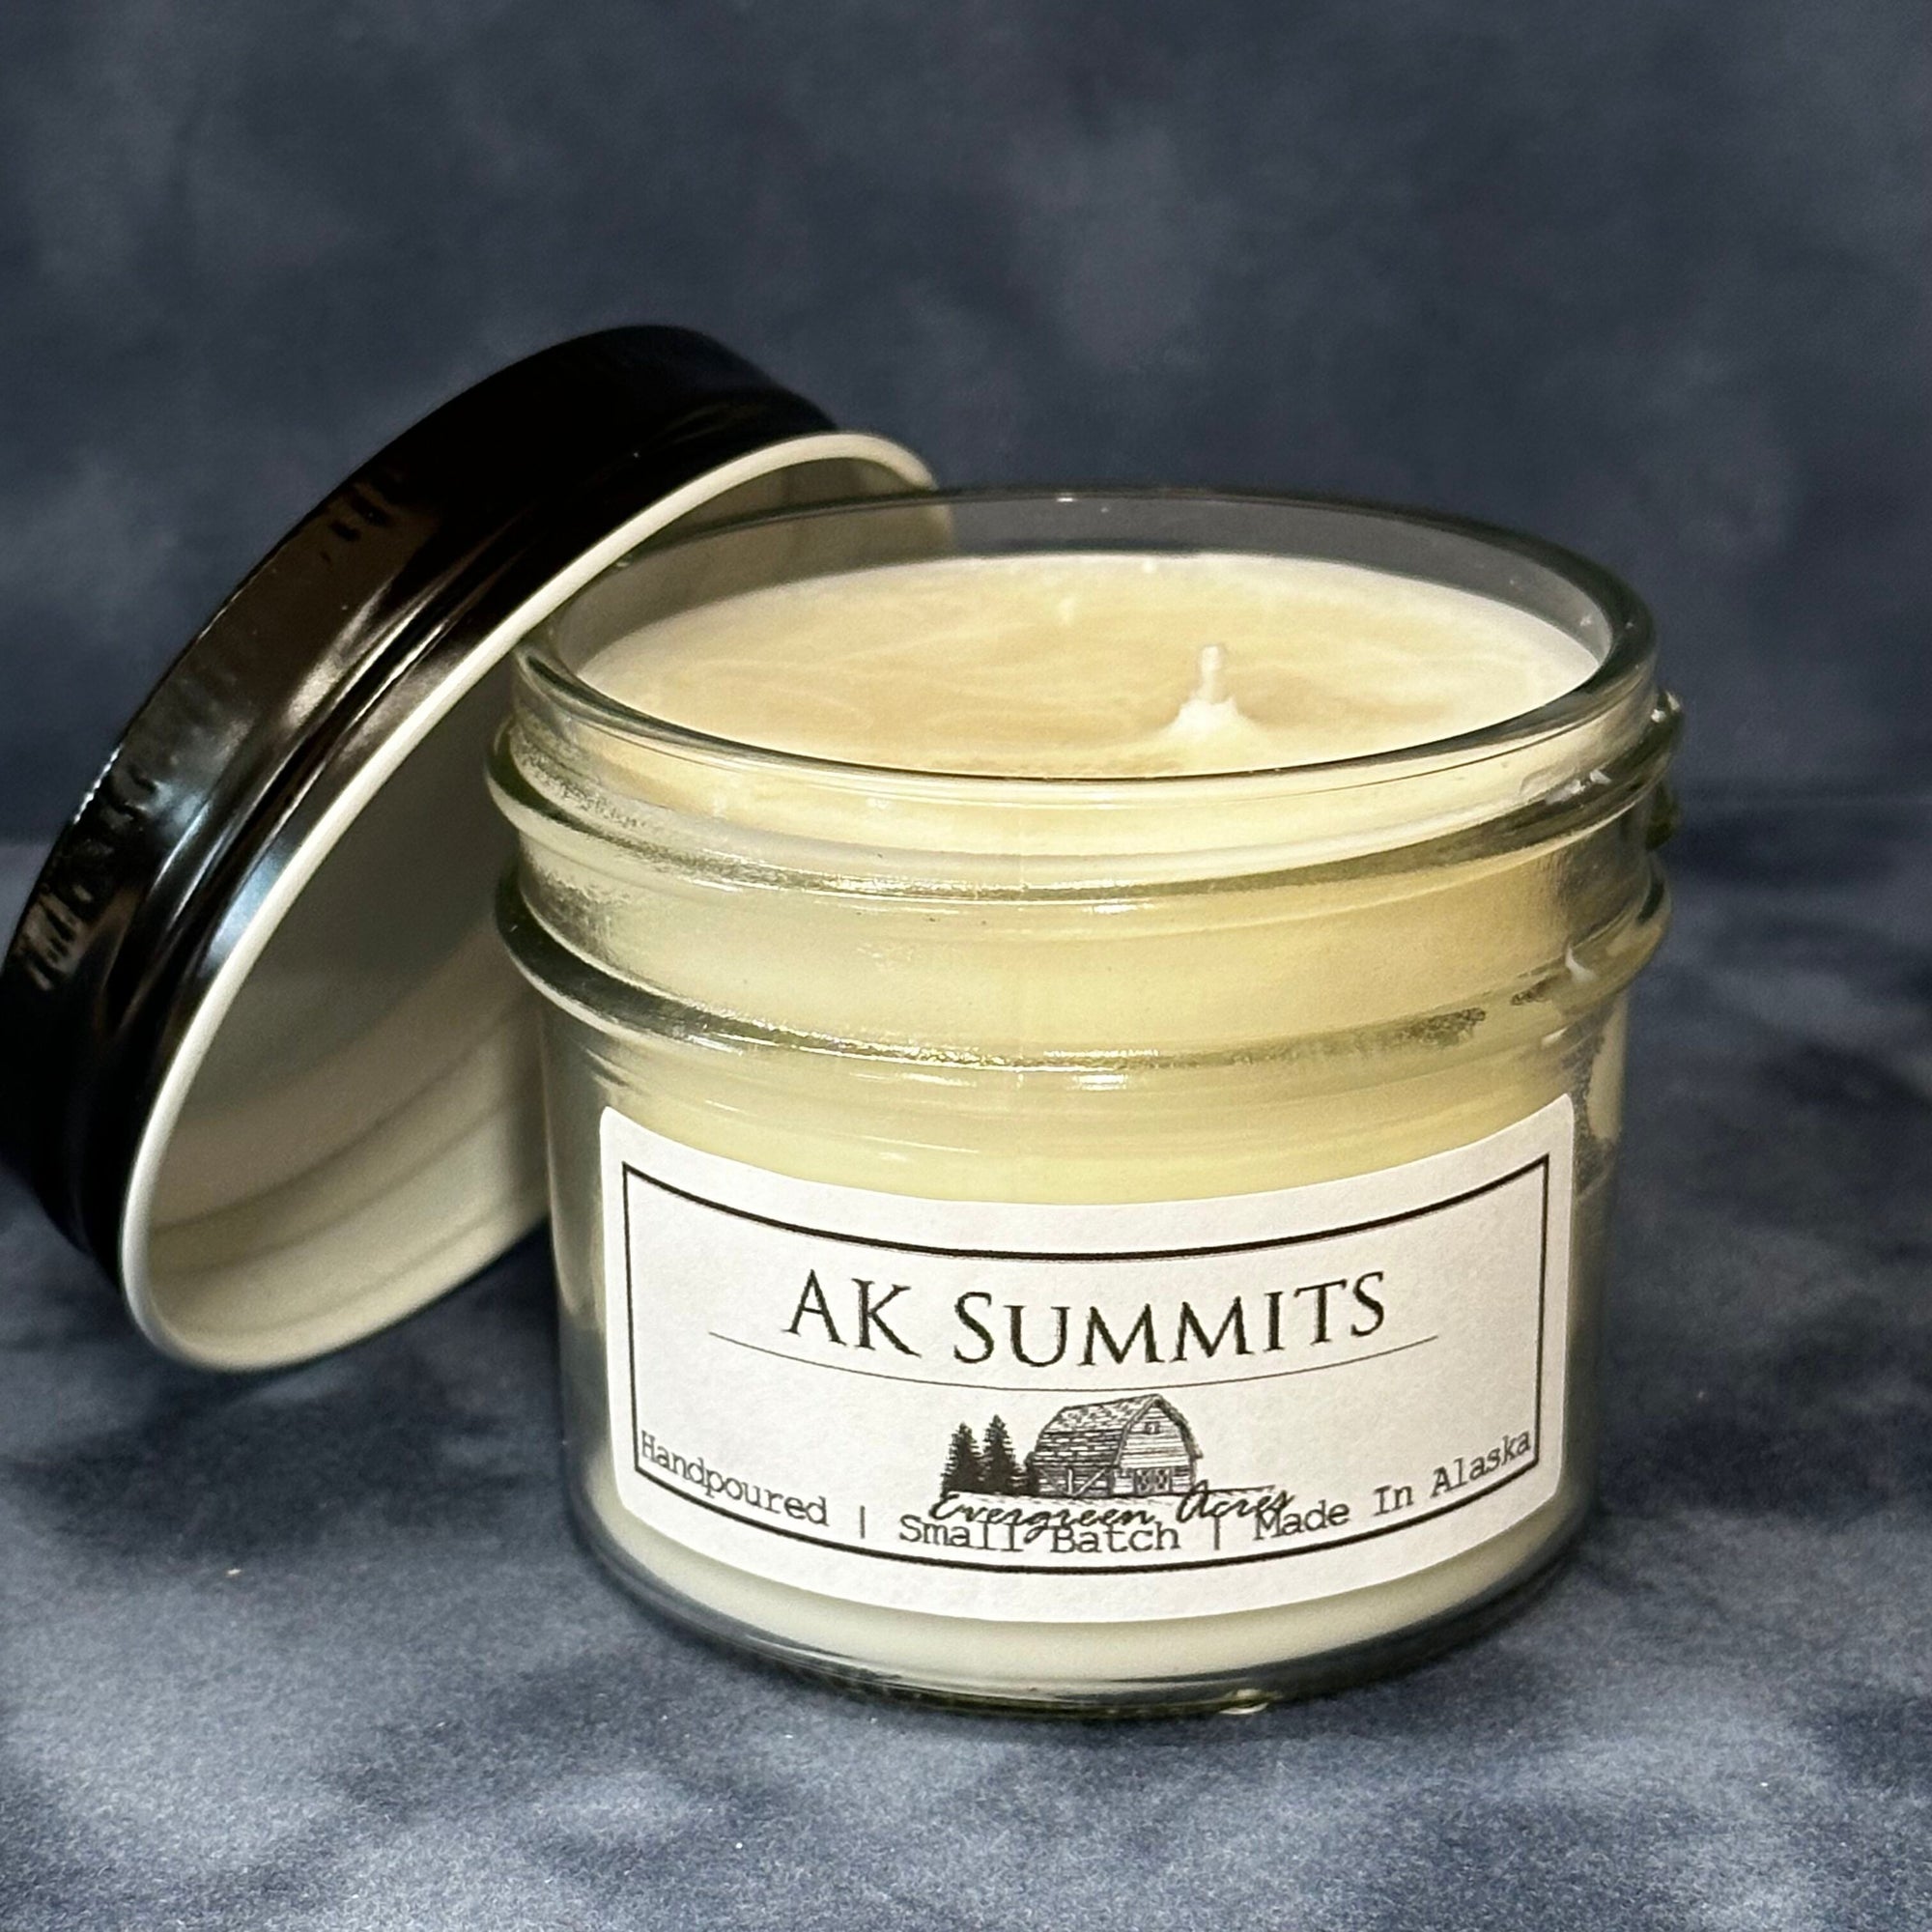 AK Summits Candle